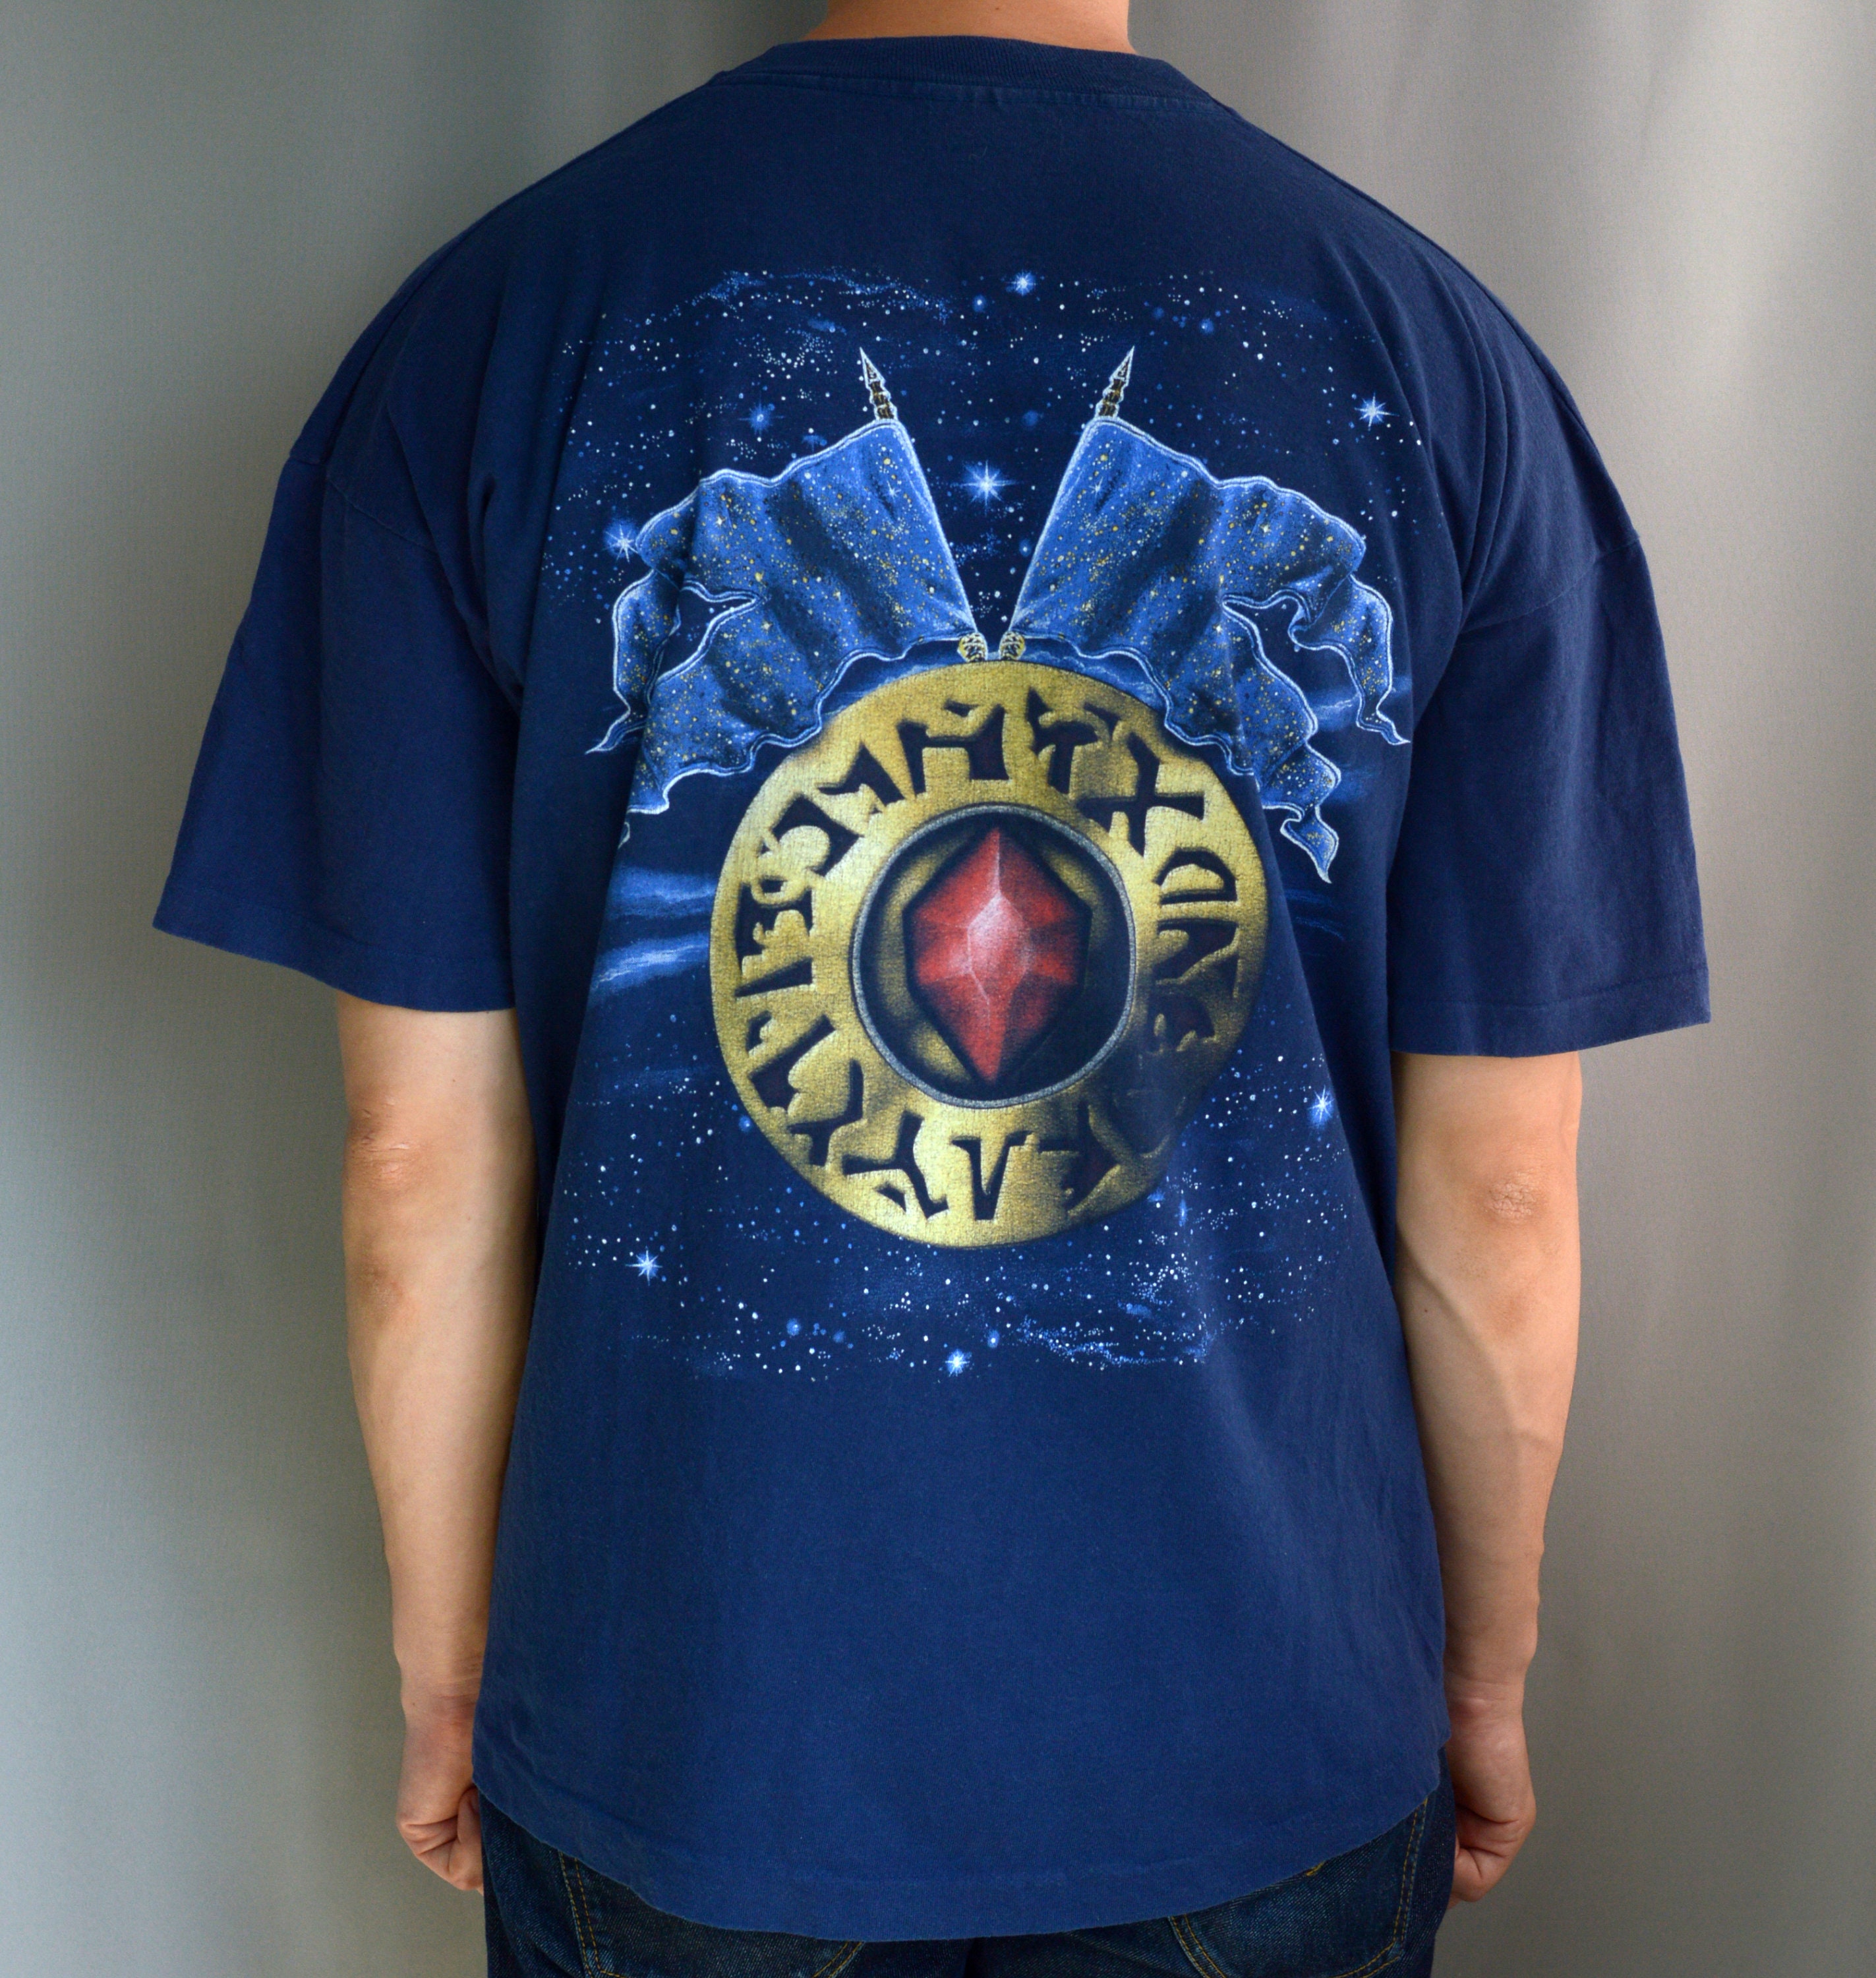 Vintage 1998 Blind Guardian t shirt - Etsy 日本